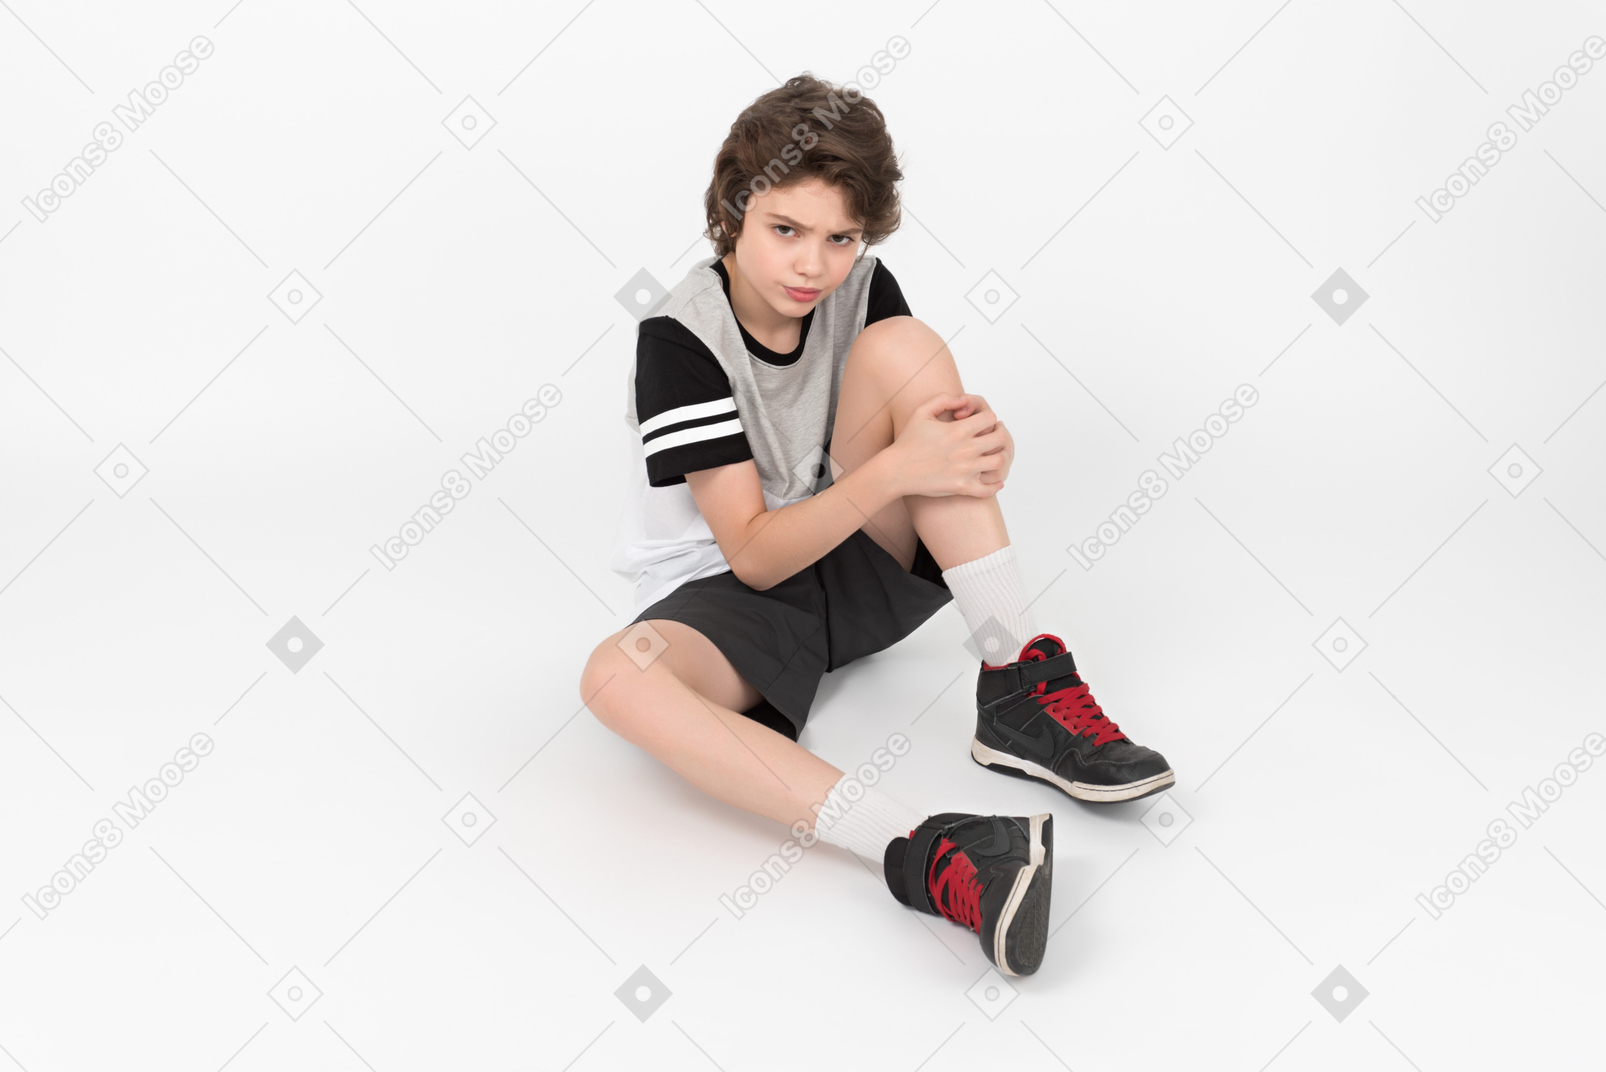 Ragazzo atletico scontroso è seduto sul pavimento e si tocca la gamba